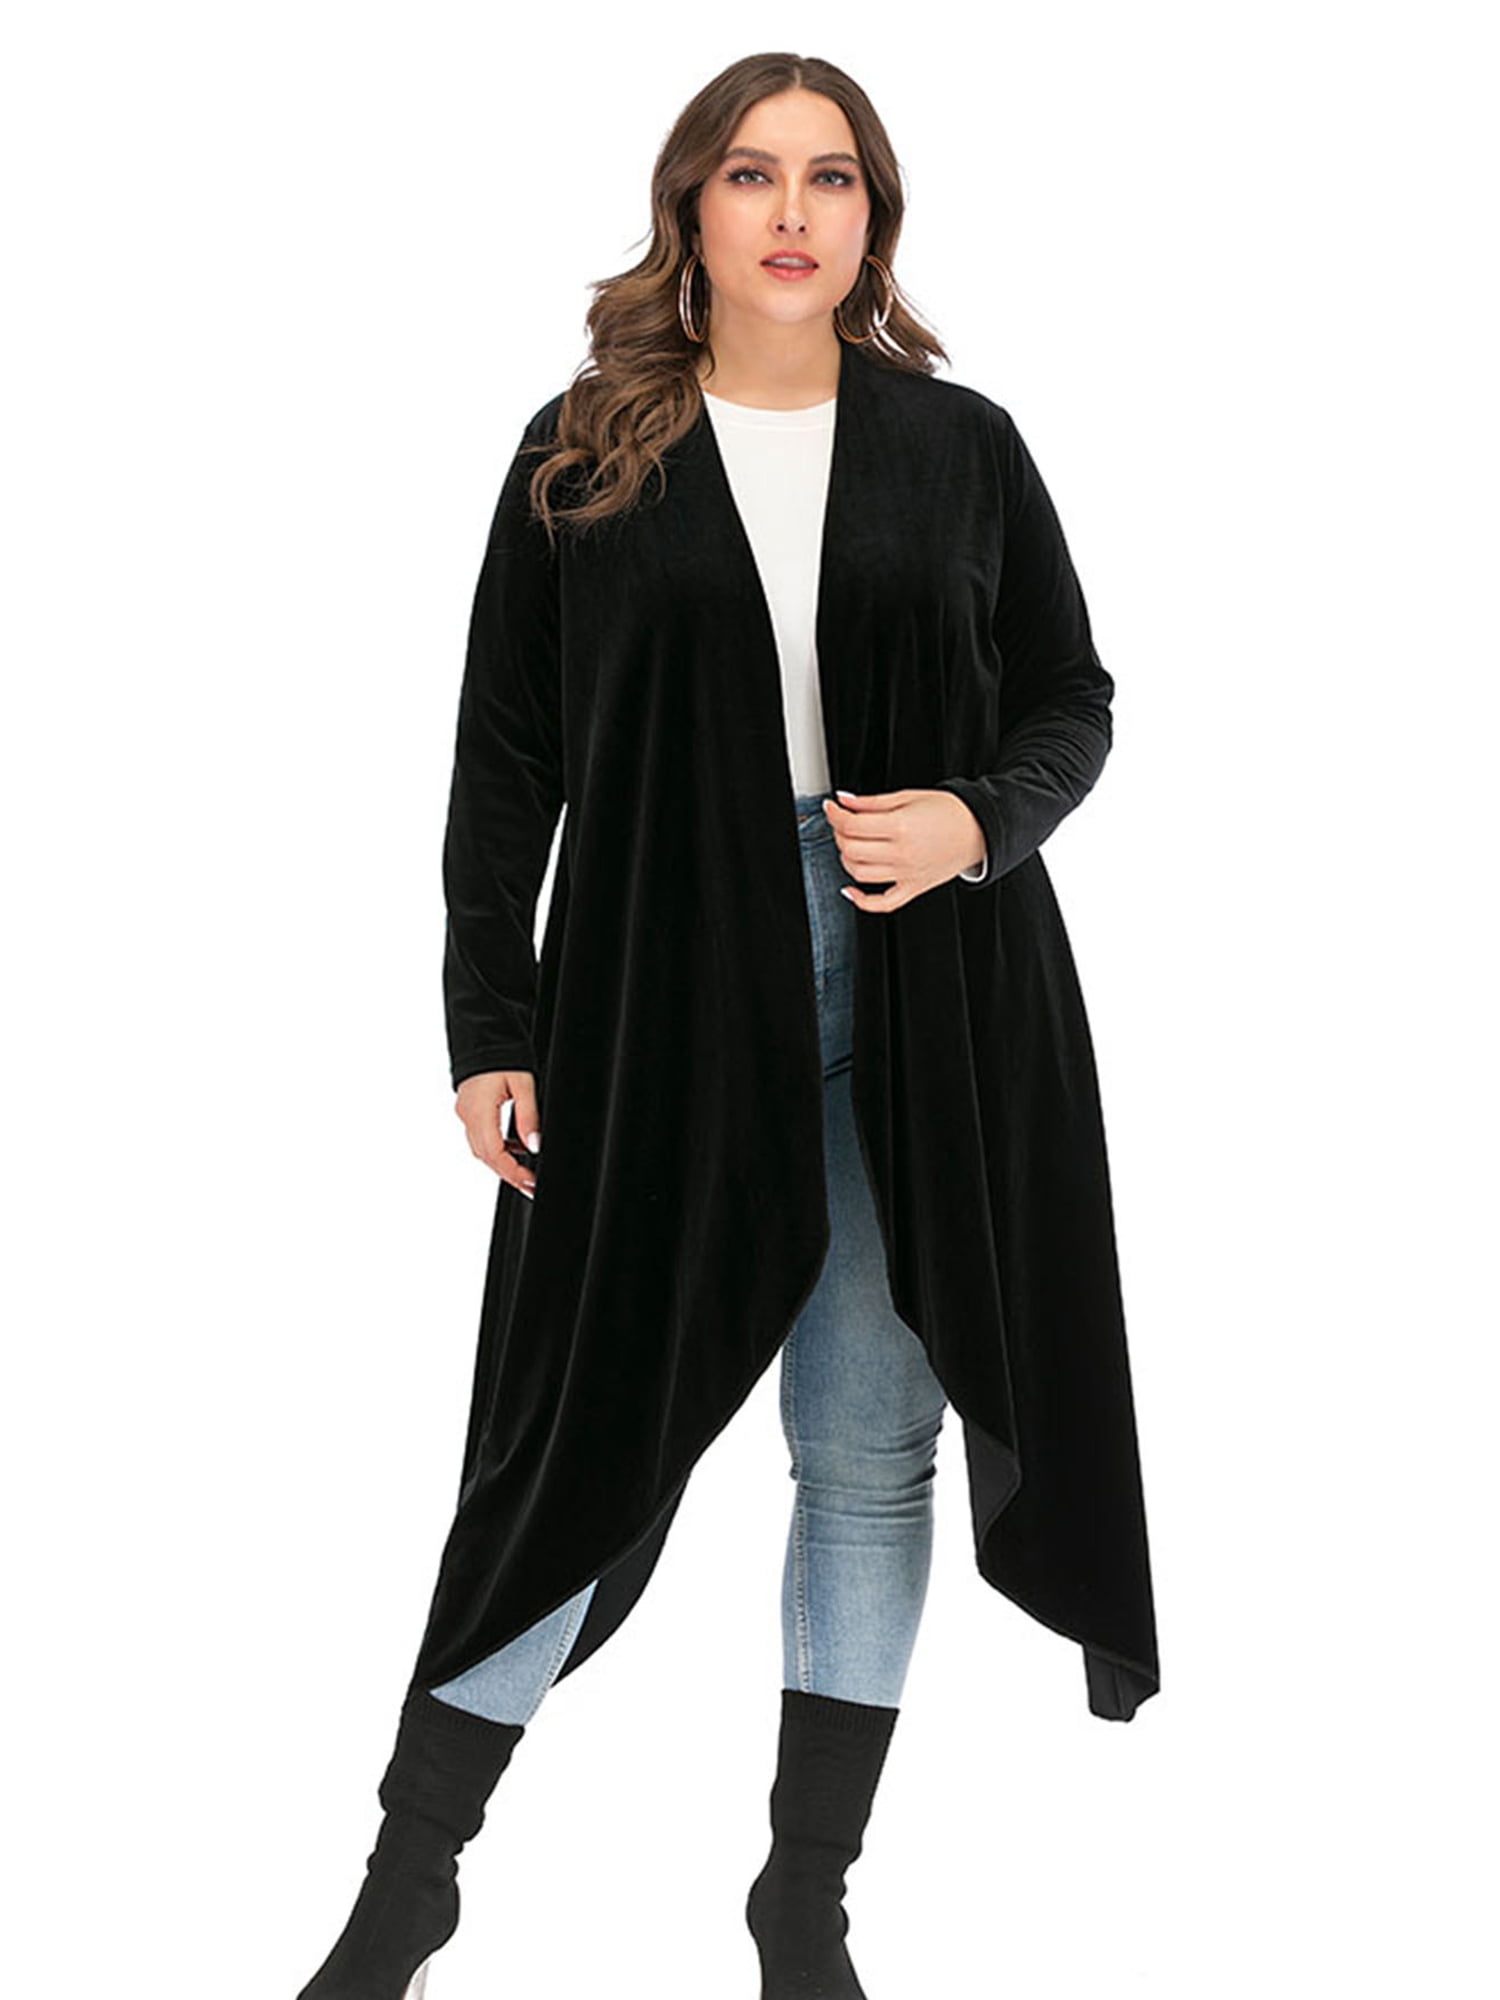 Fashion Women Long Sleeve Cardigan Waterfall Jacket Outwear Long Maxi Coat Tops